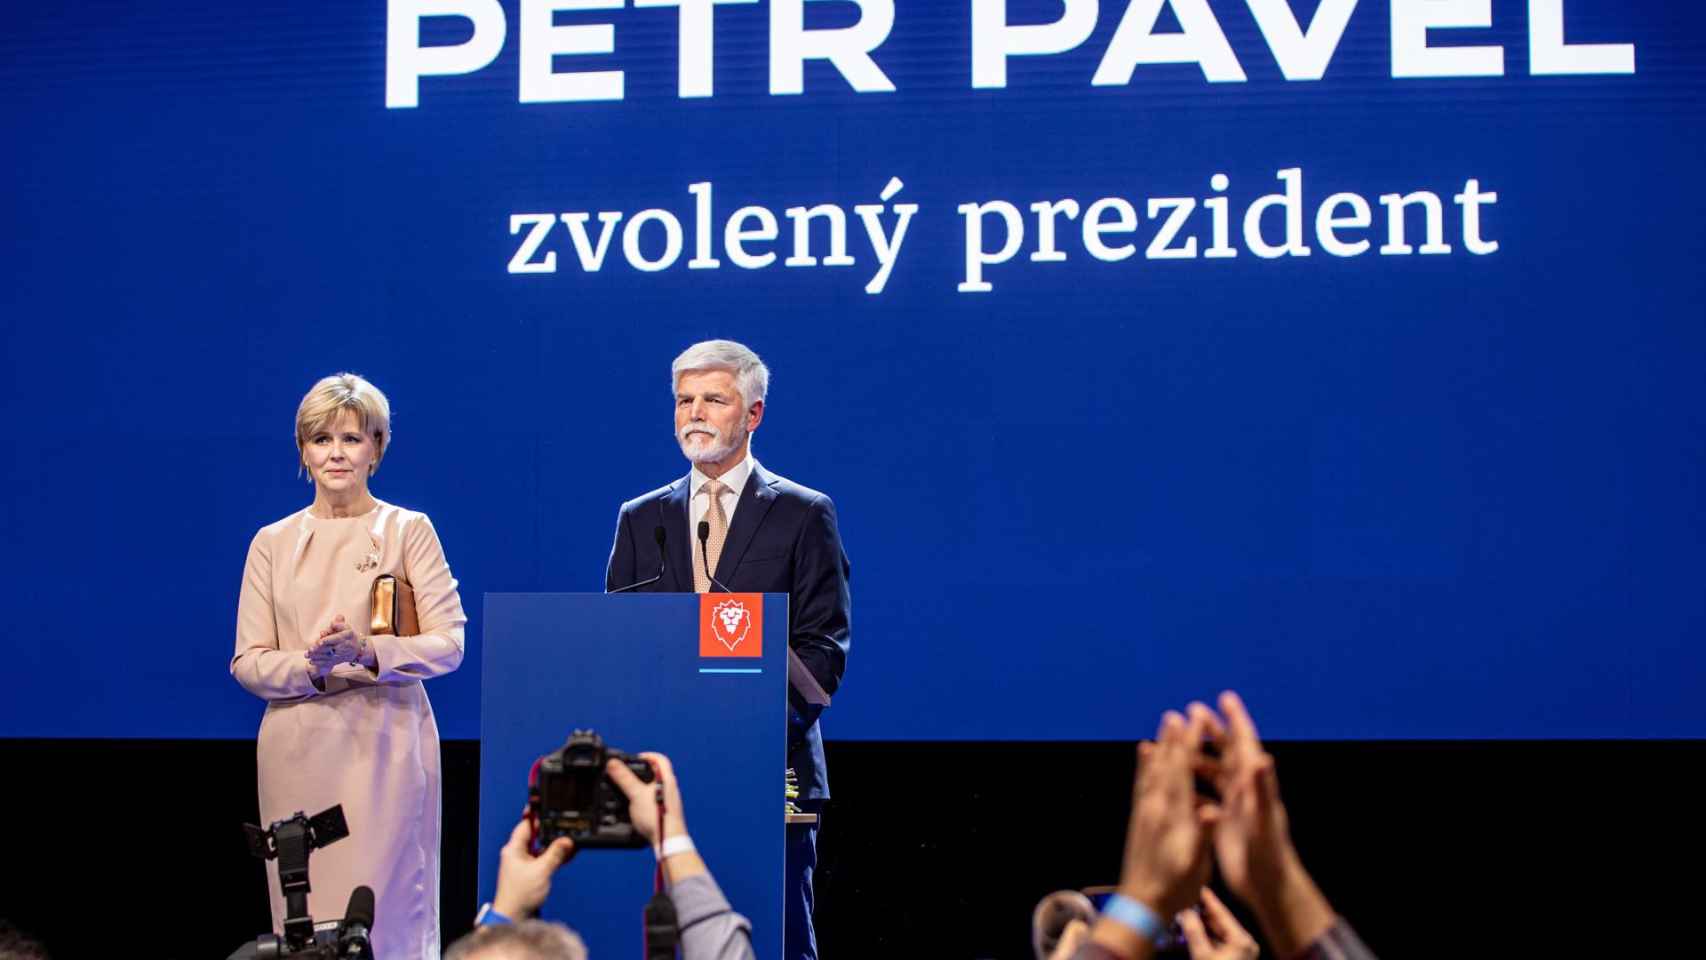 Petr Pavel, tras la segunda vuelta en las  elecciones presidenciales de República Checa.